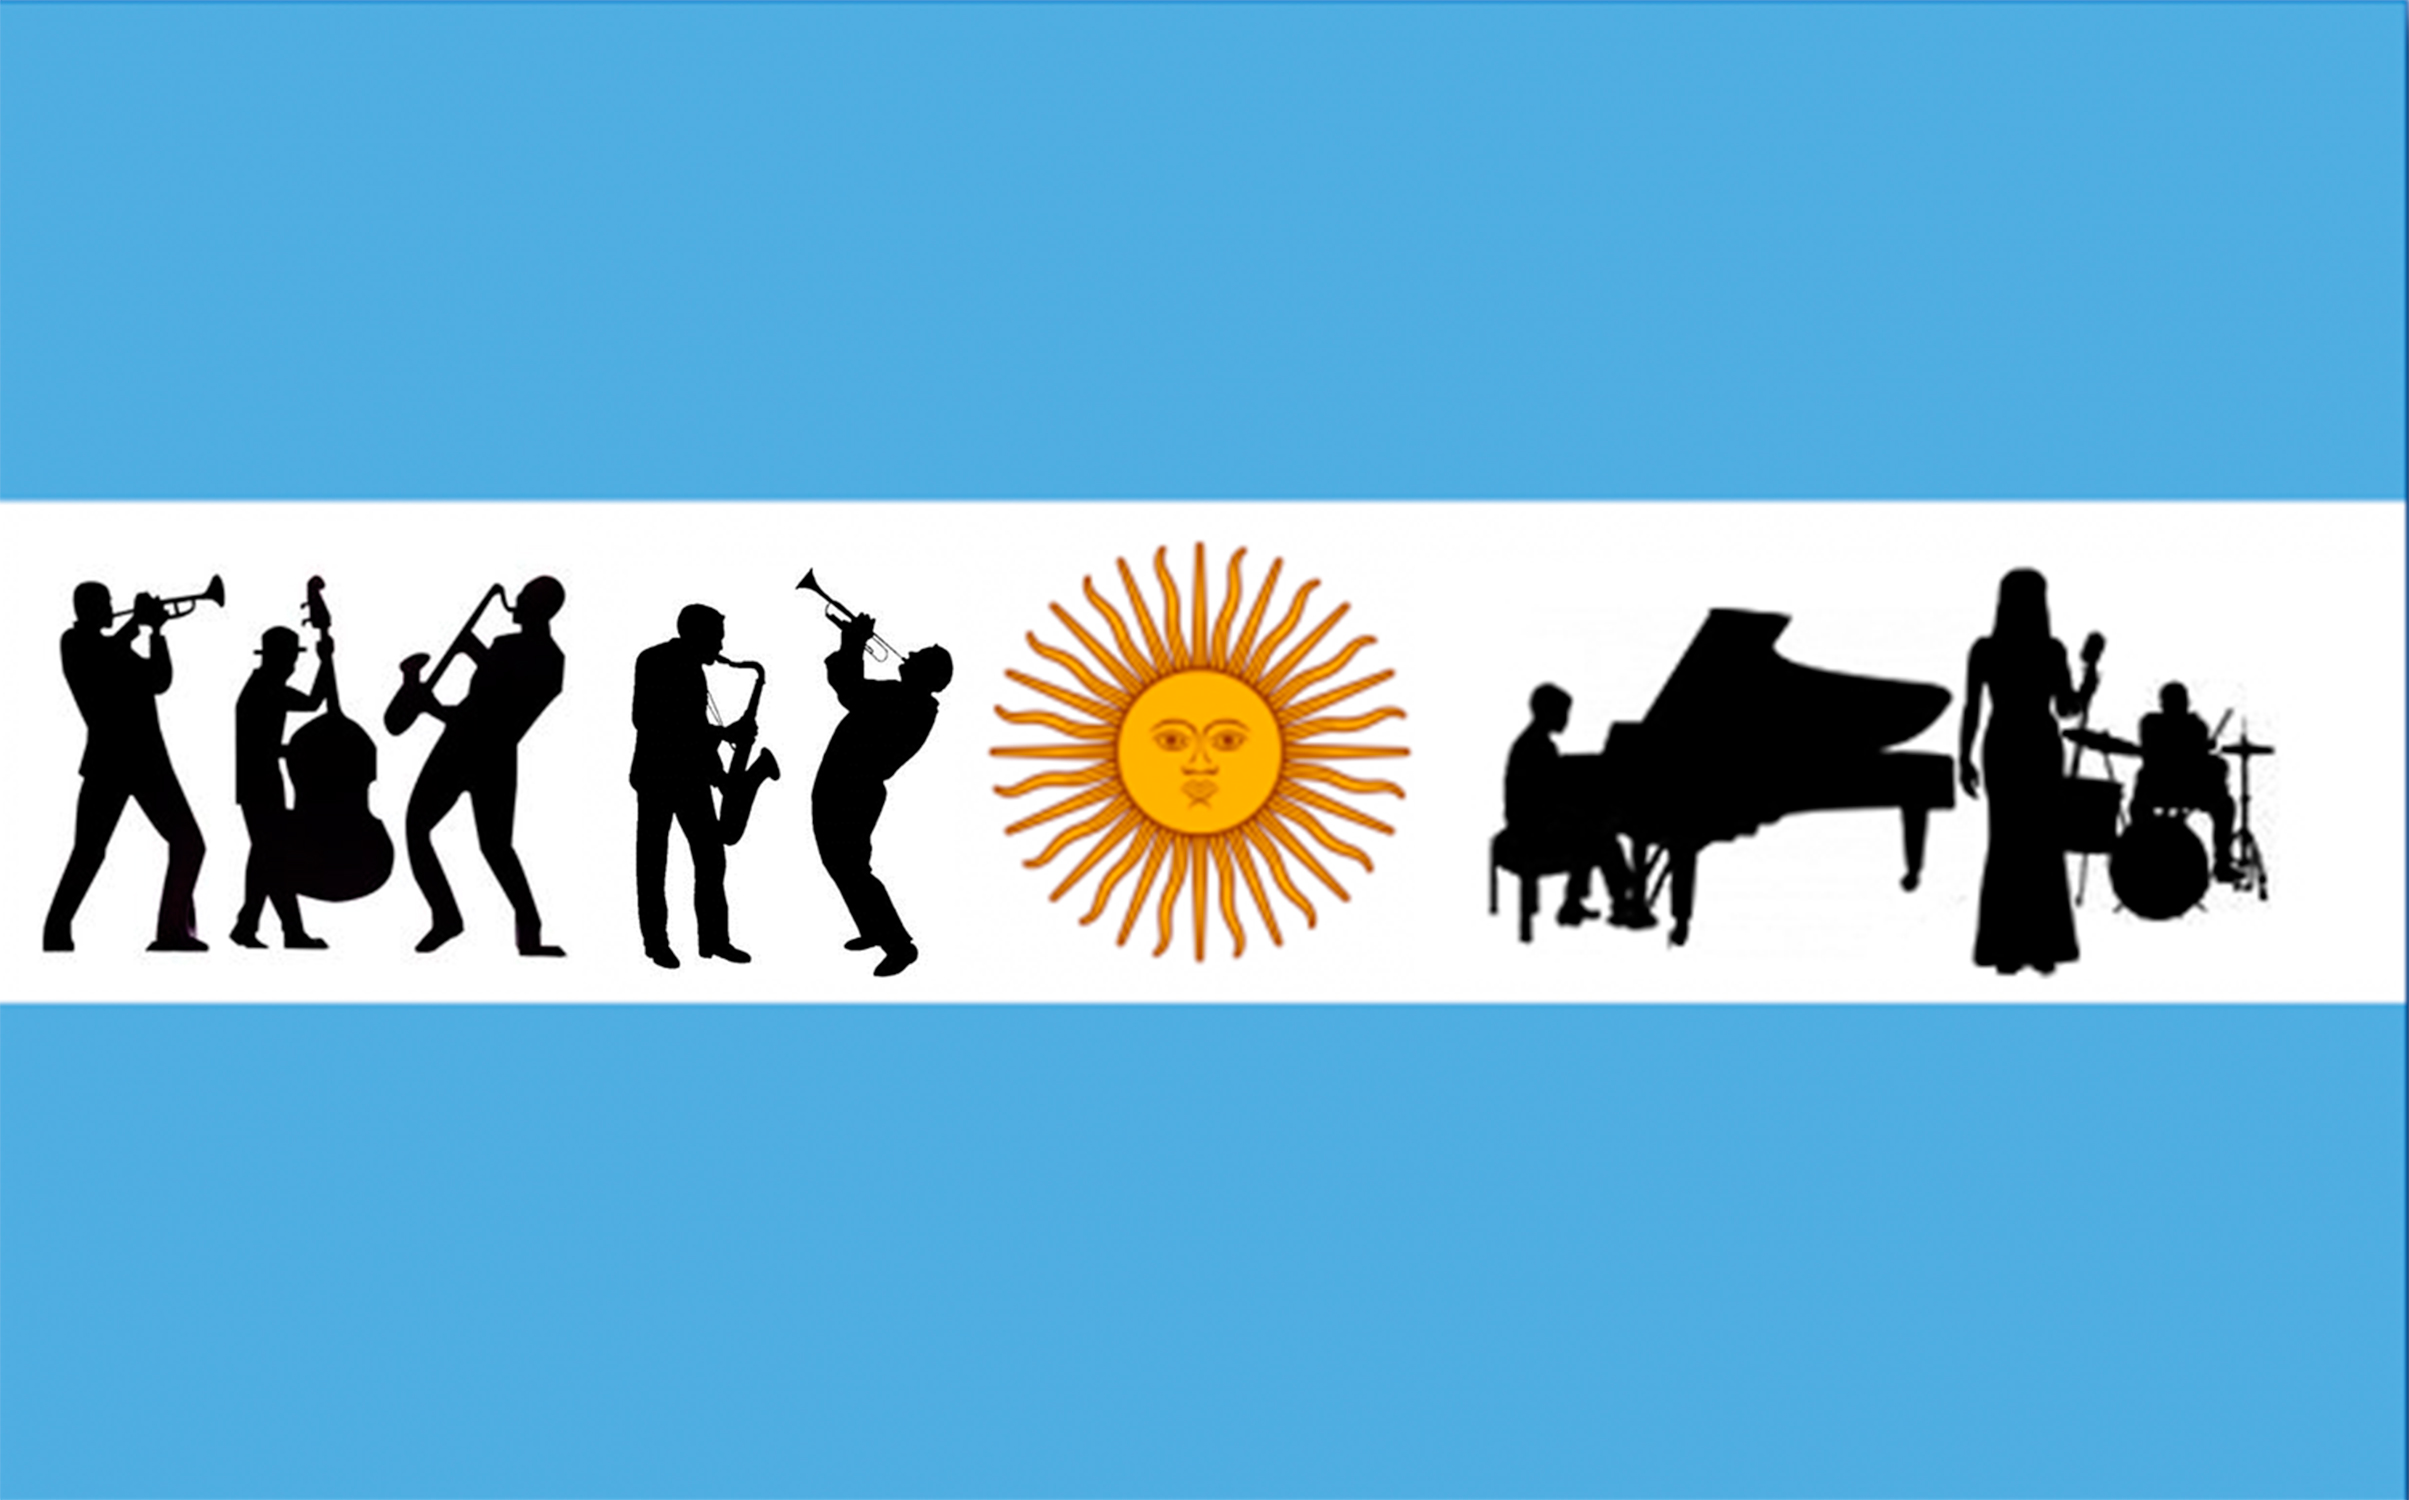 Jazz-made-in-argentina